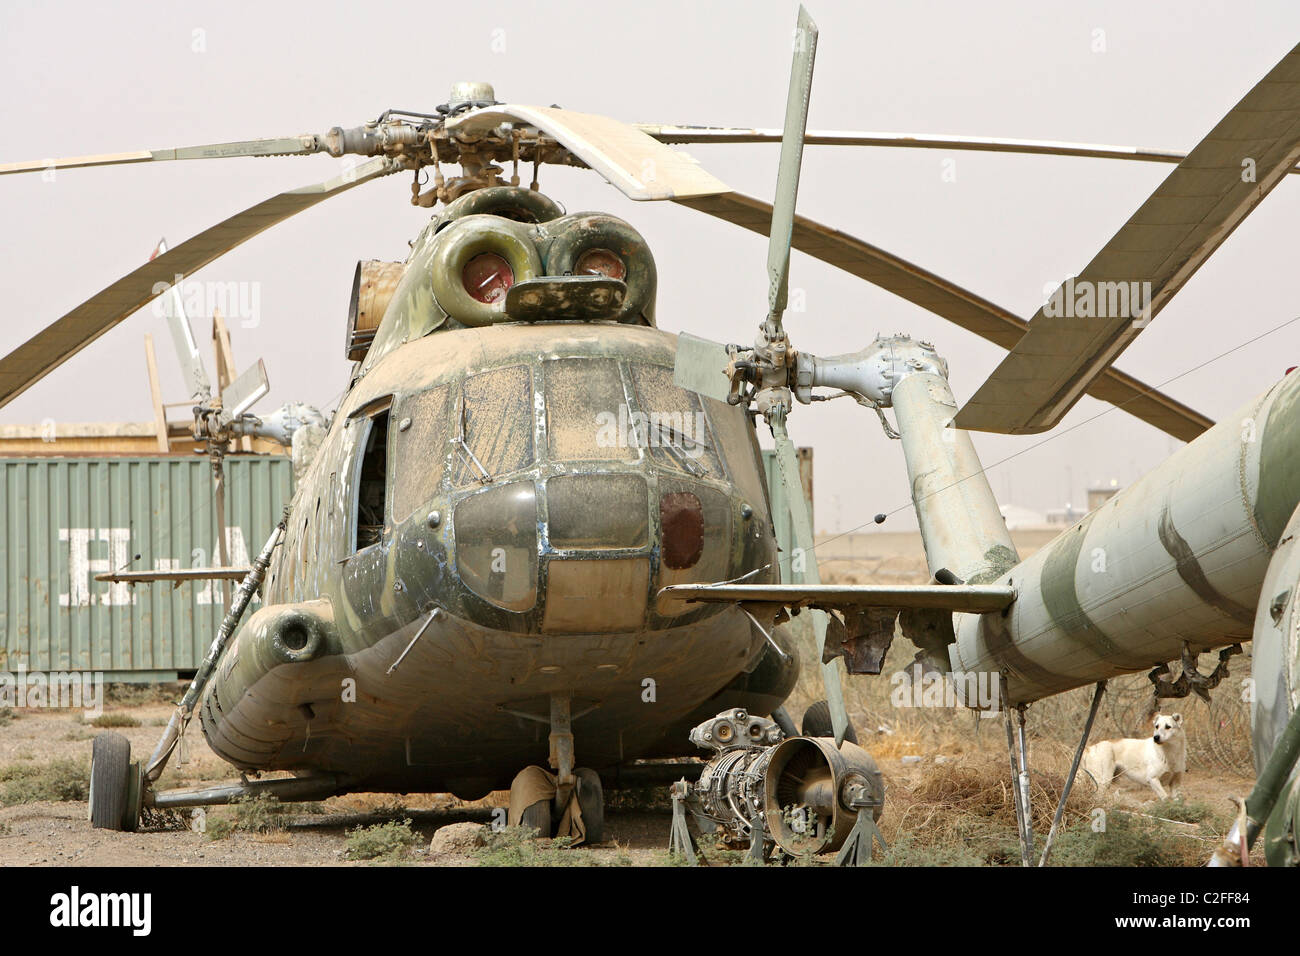 Un hélicoptère militaire russe défectueuse, Kunduz, Afghanistan Banque D'Images